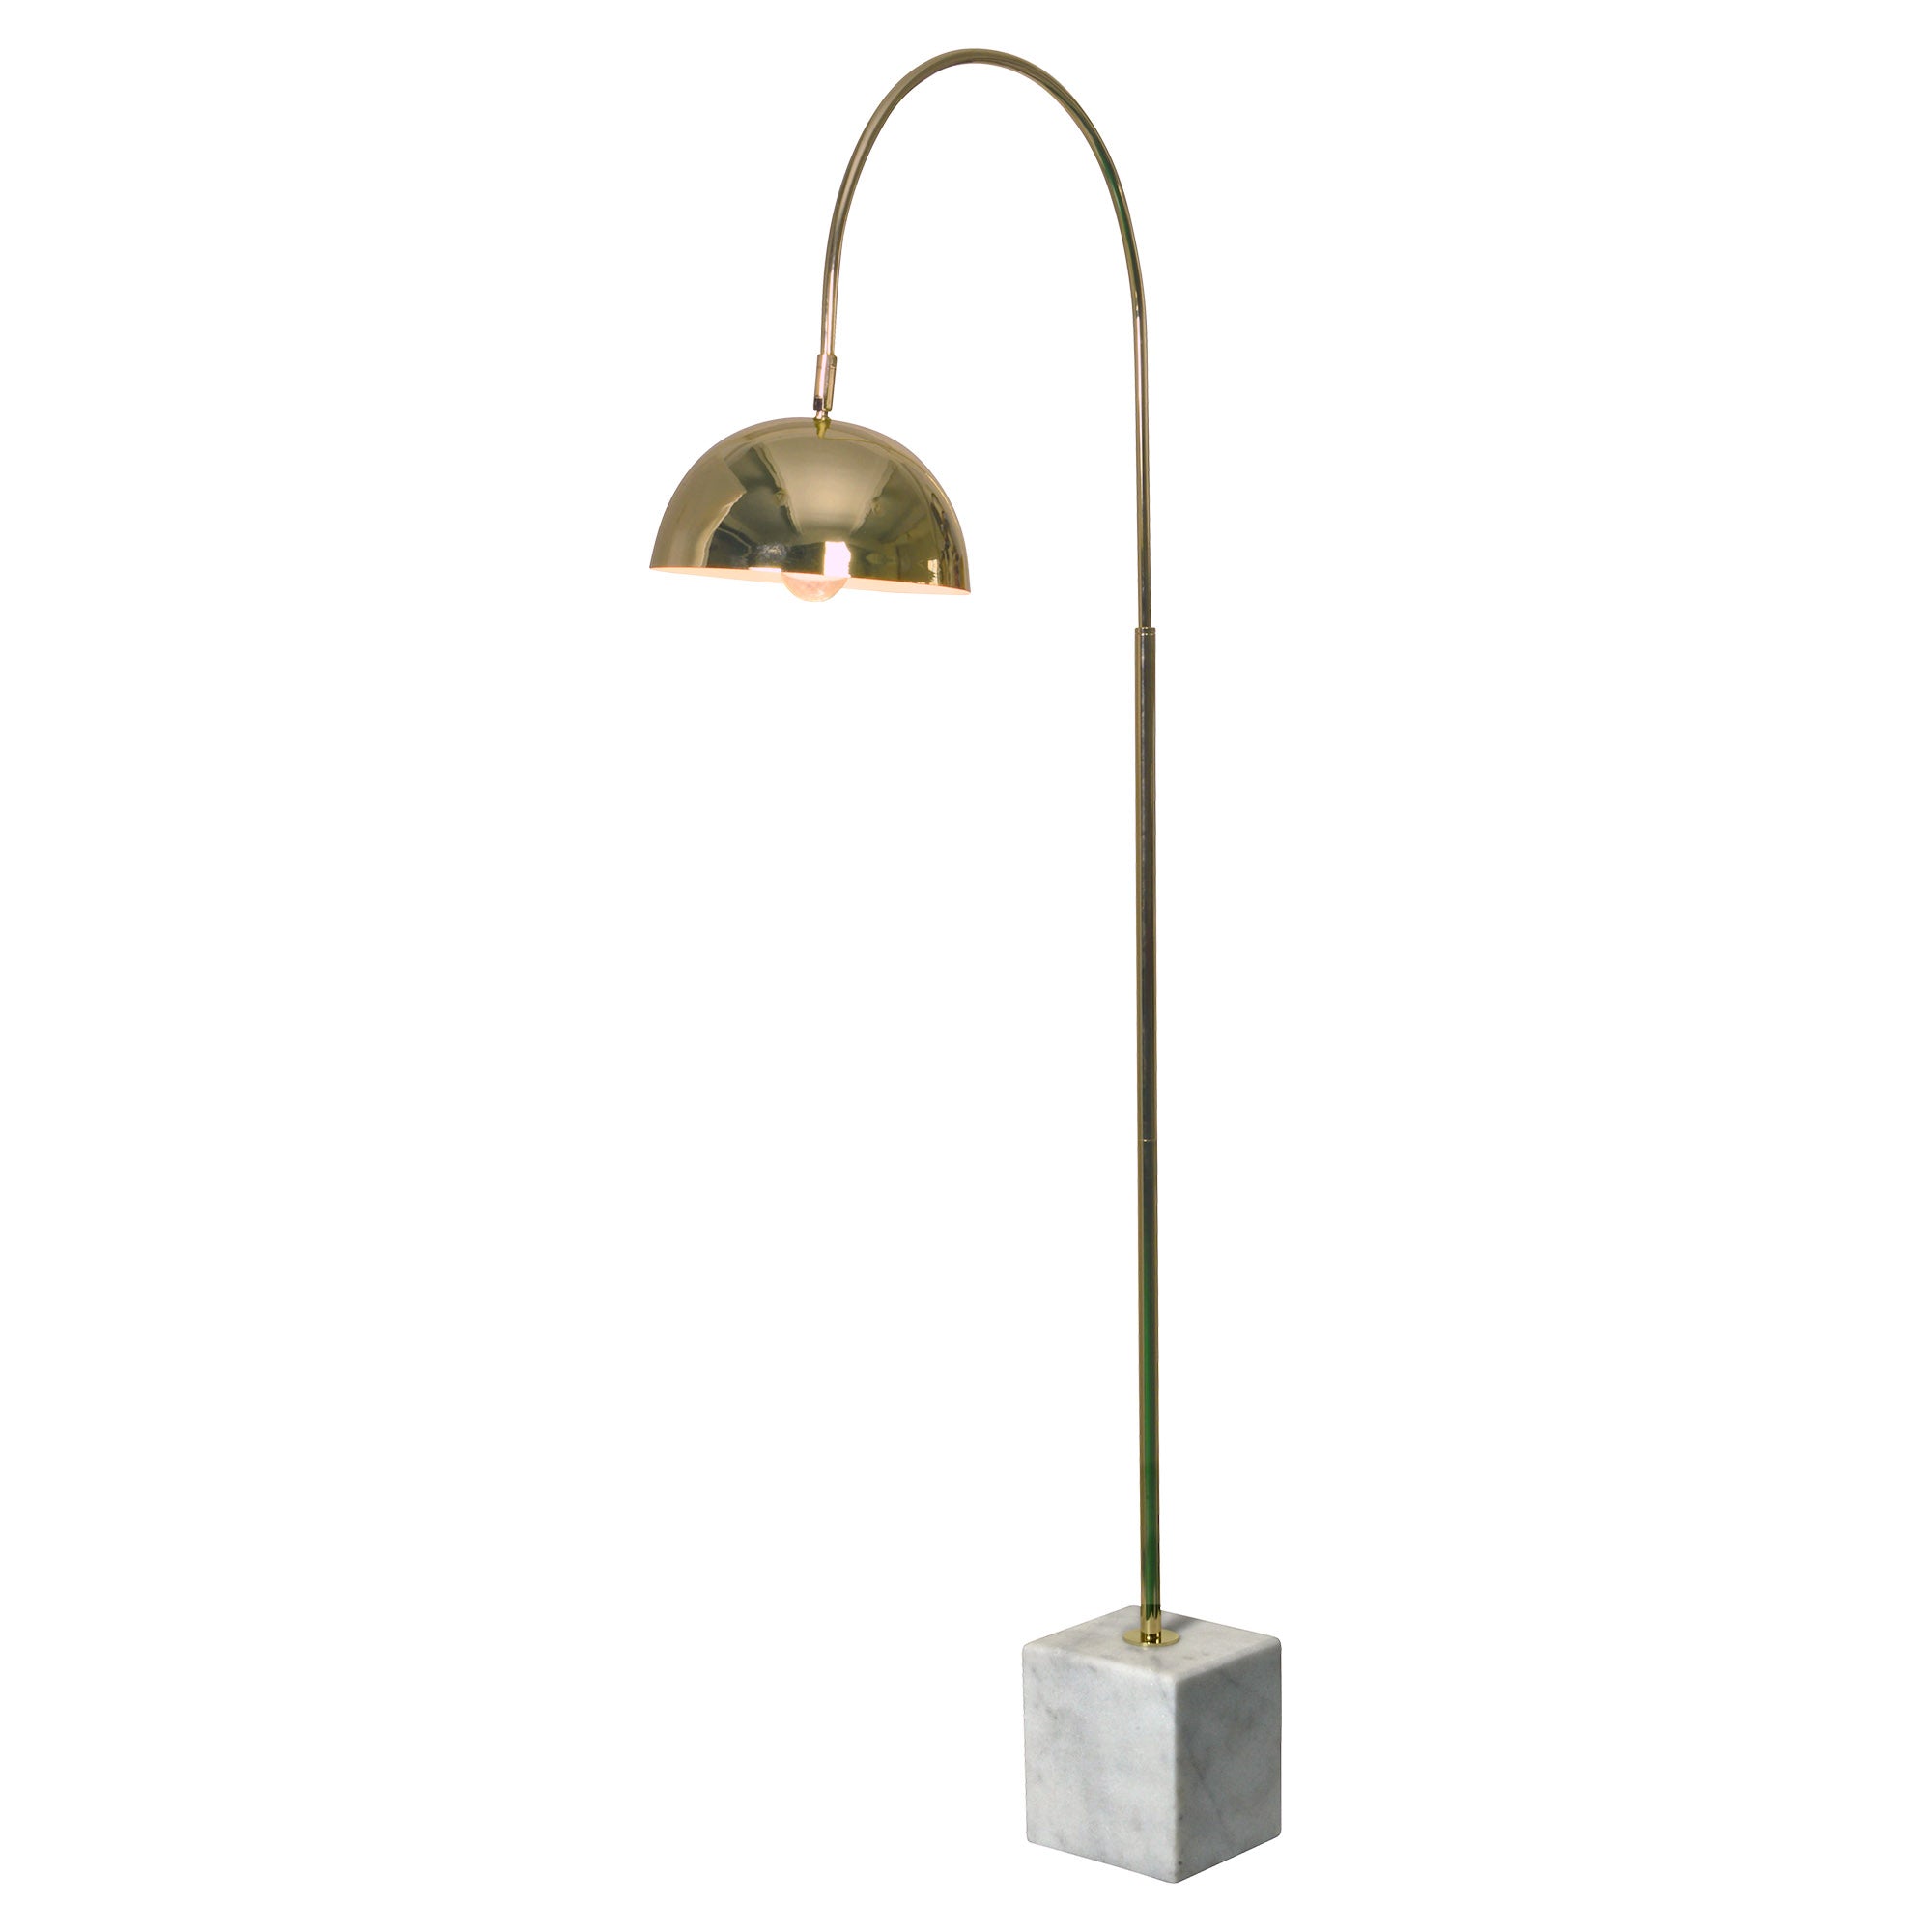 Valdosta 27" Iron - Brass Plated Floor Lamp